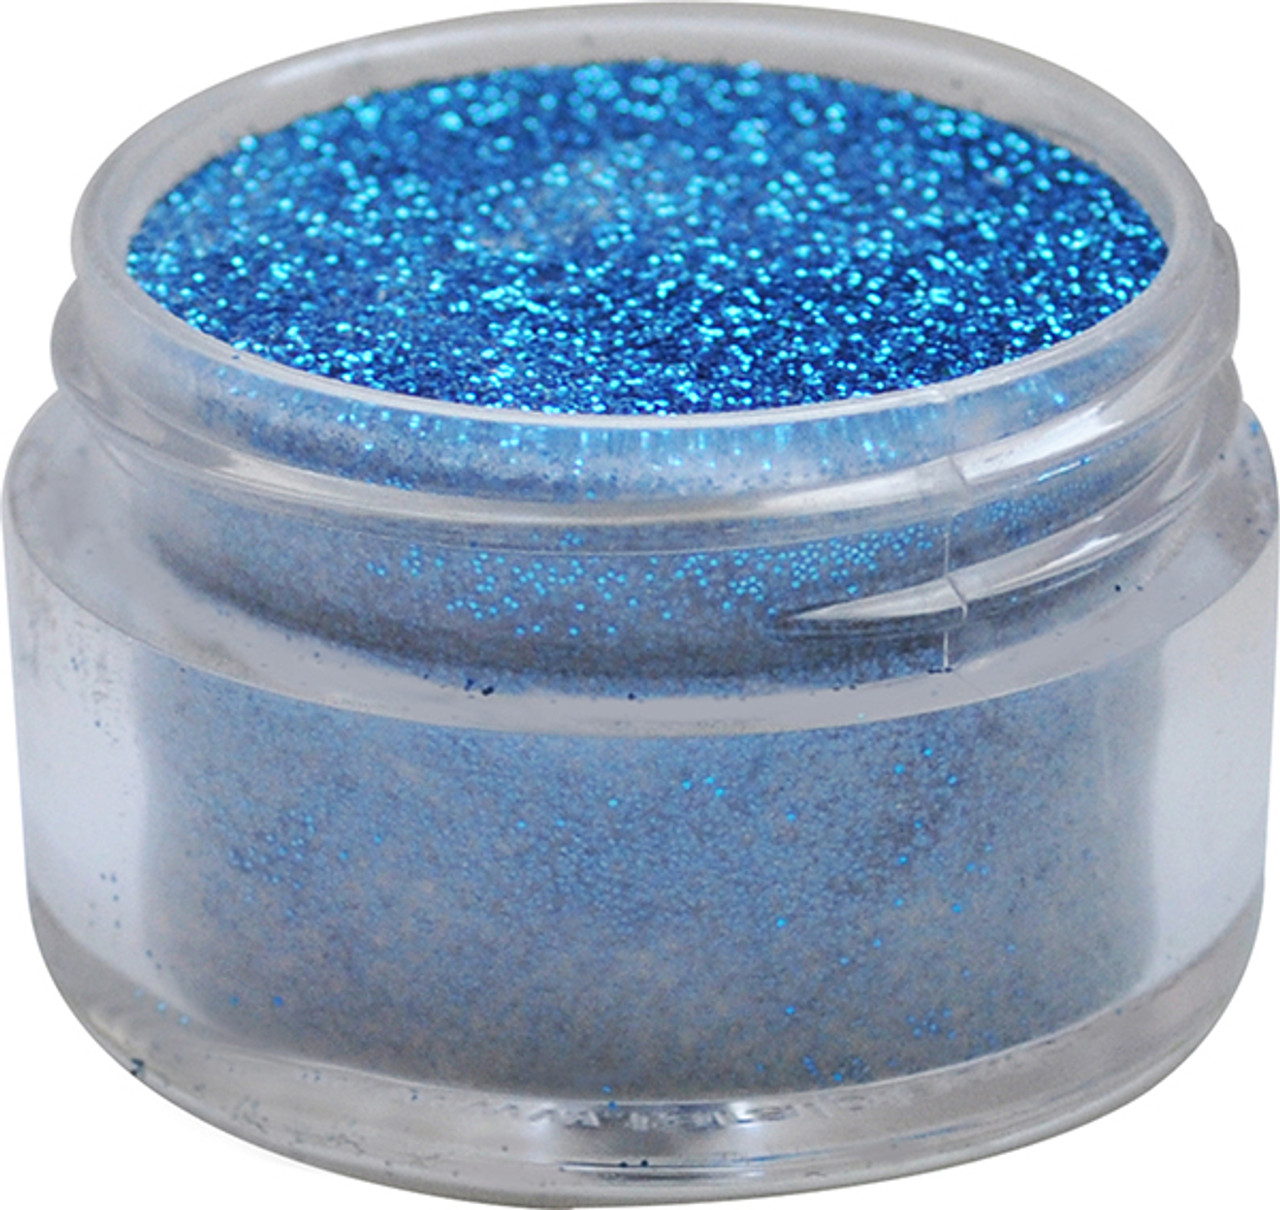 U2 Summer Color Powder - Turquoise Shimmer - 1/2 oz